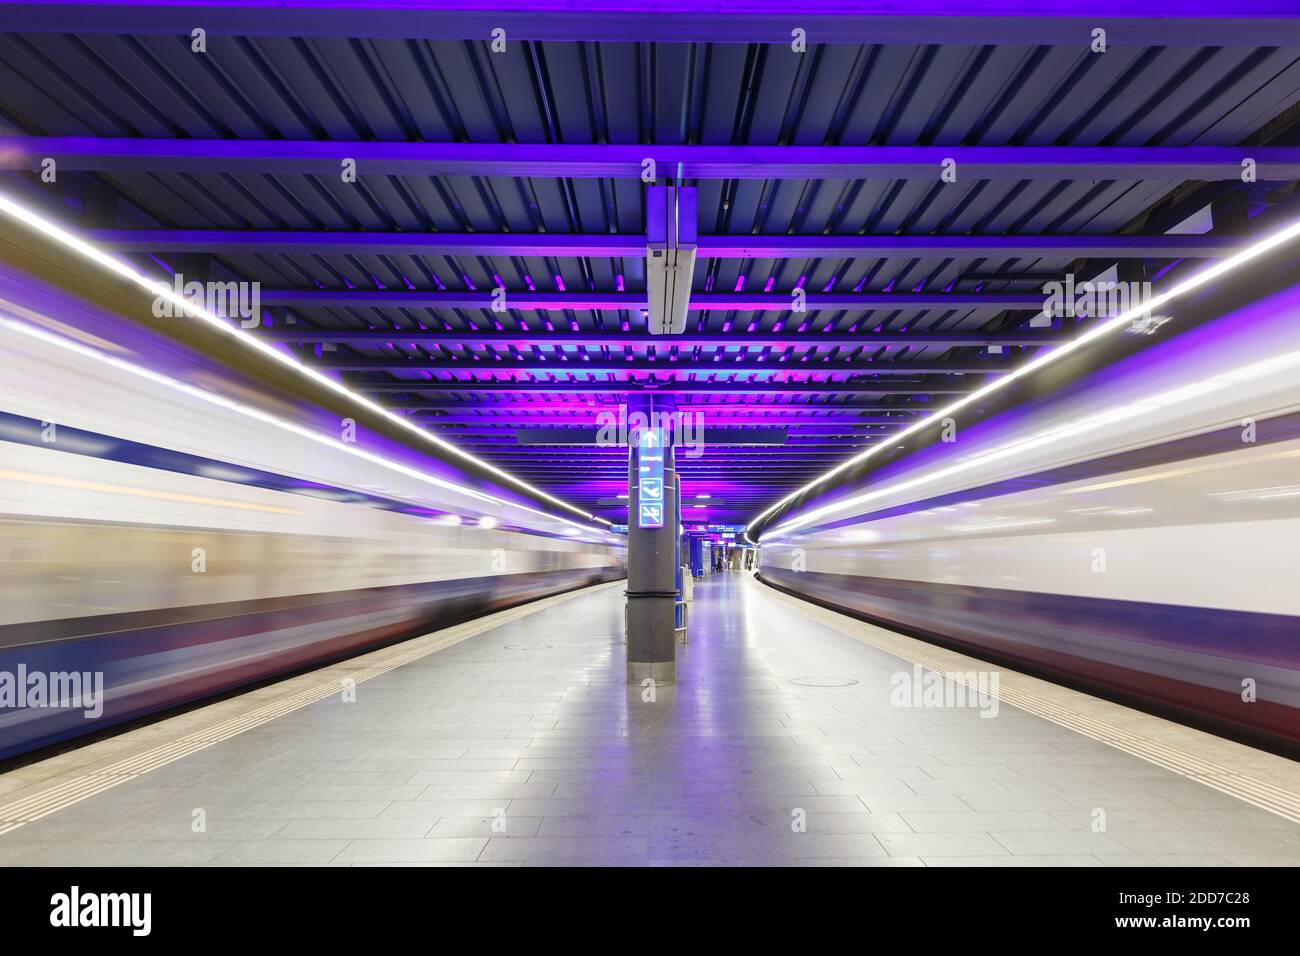 Zurich, Switzerland - September 23, 2020: Trains at Zurich Airport railway station in Switzerland. Stock Photo